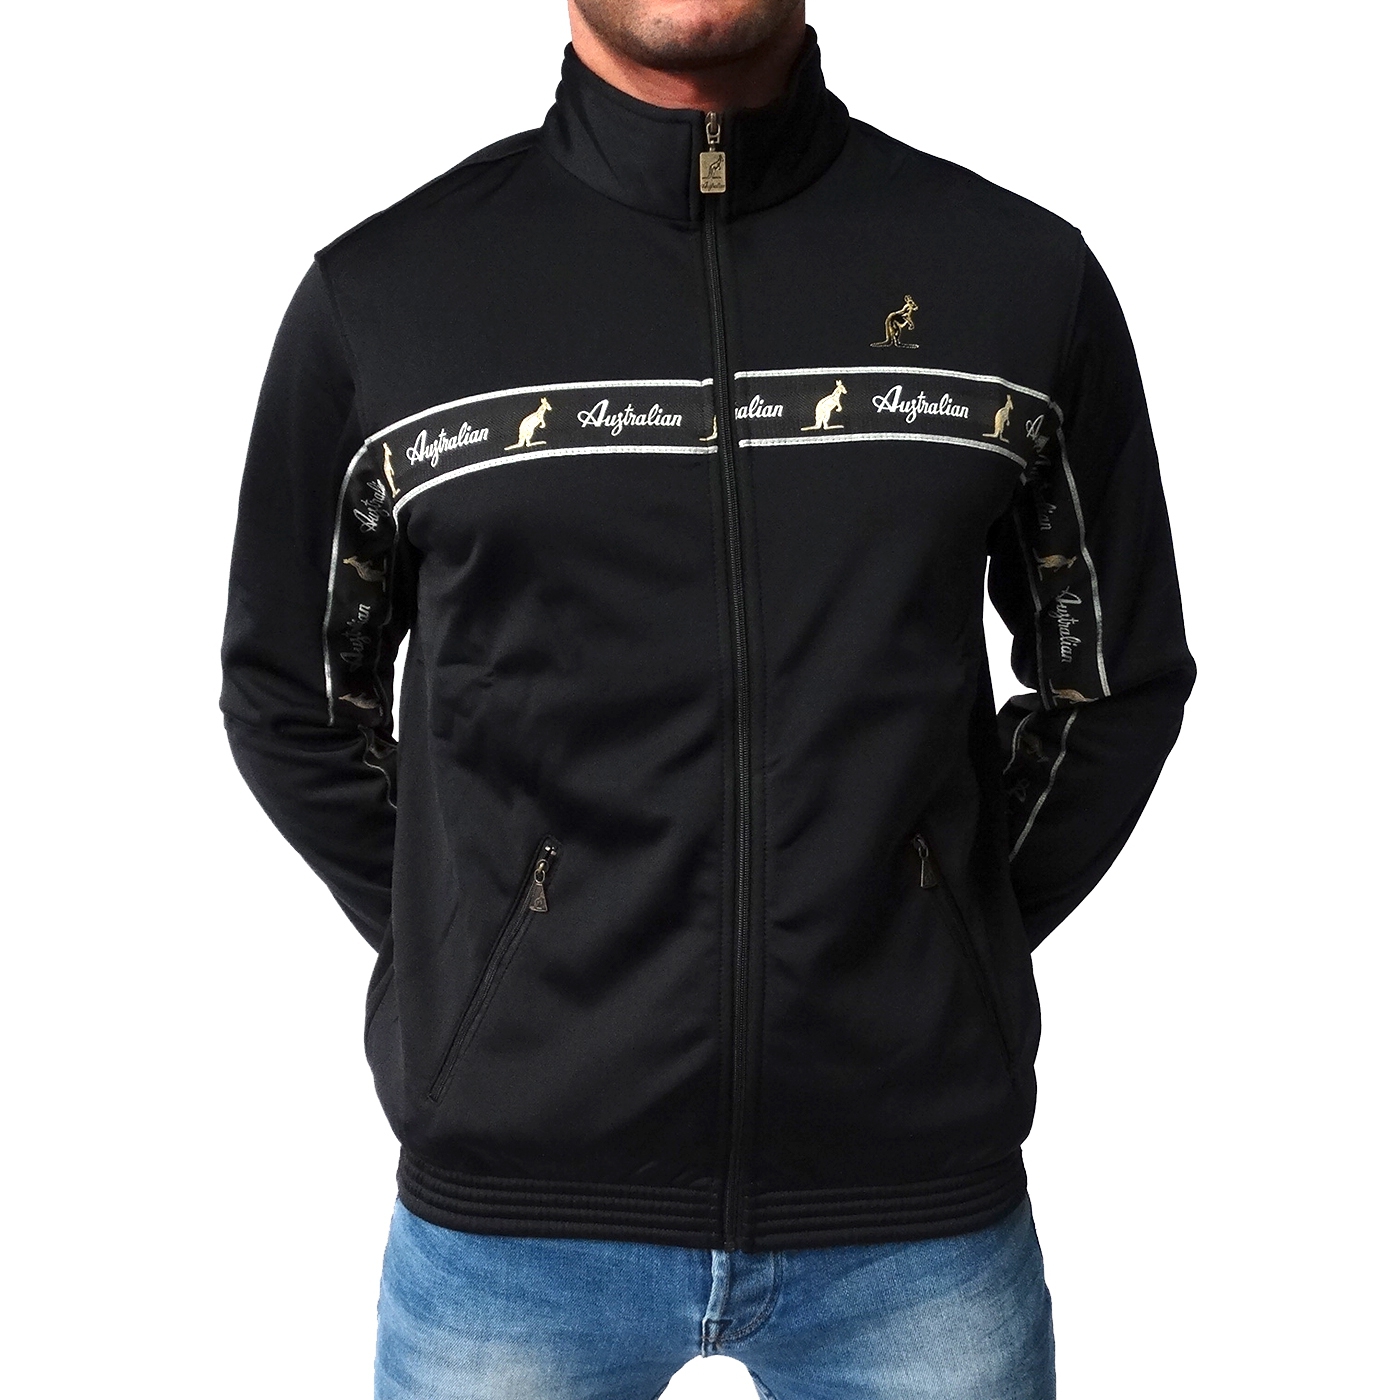 nominelt Reklame Gemme Australian jacket black bies (1688607003) Jacket - Rigeshop